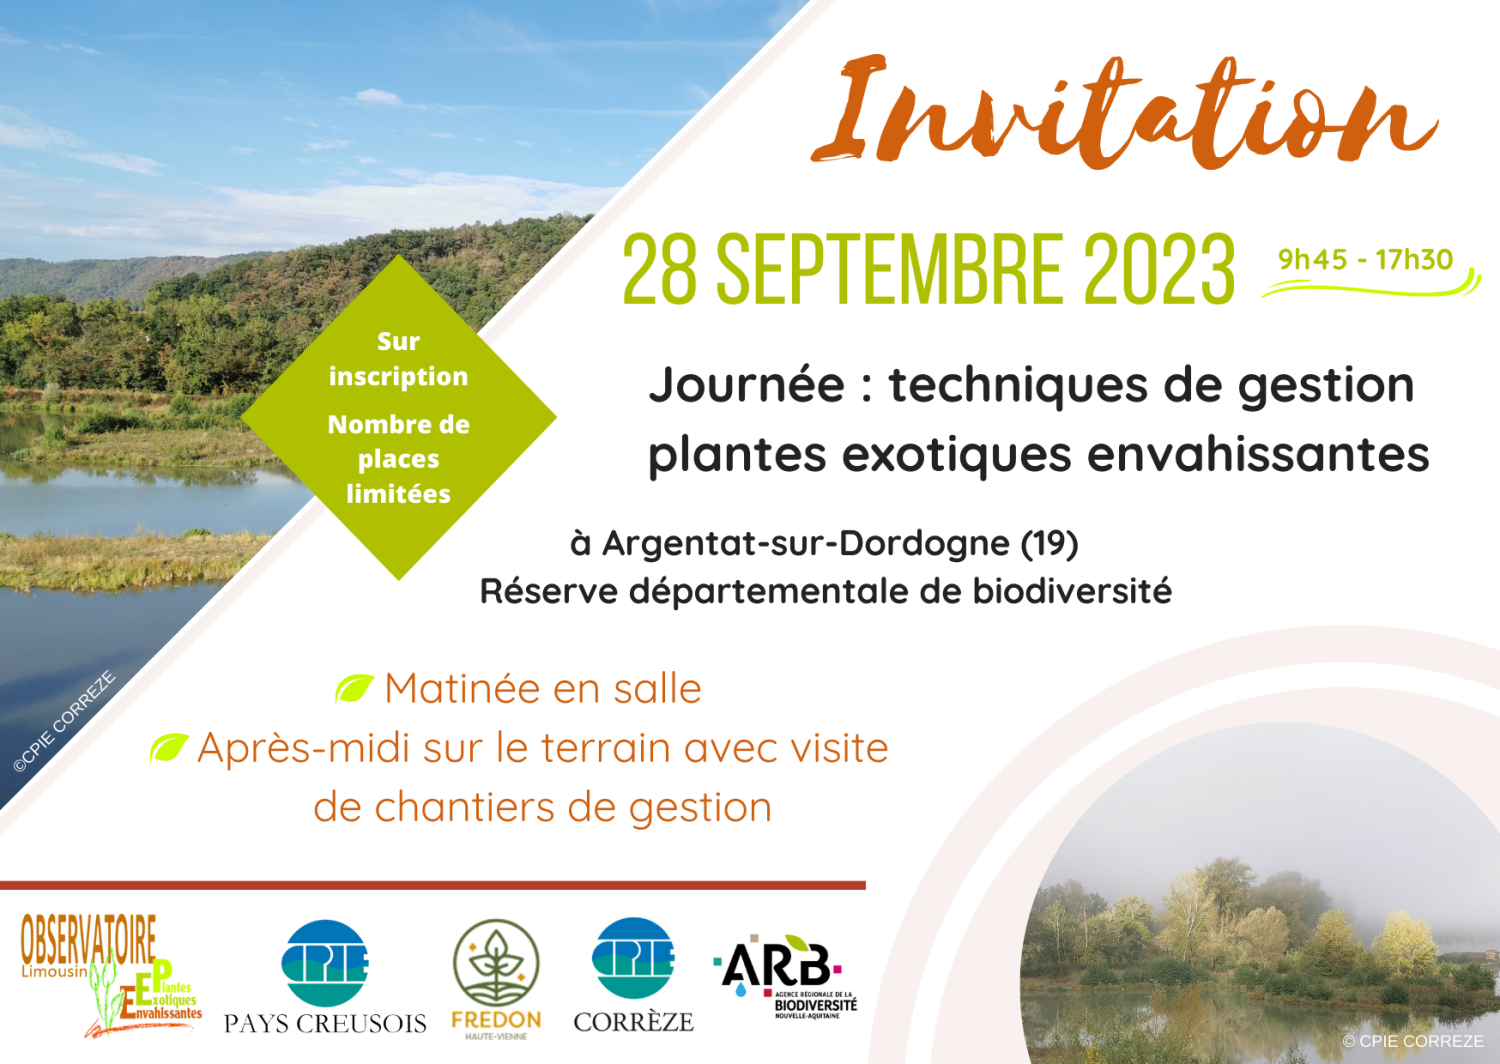 Journée sur les techniques de gestion Plantes exotiques envahissantes en Limousin le 28 septembre